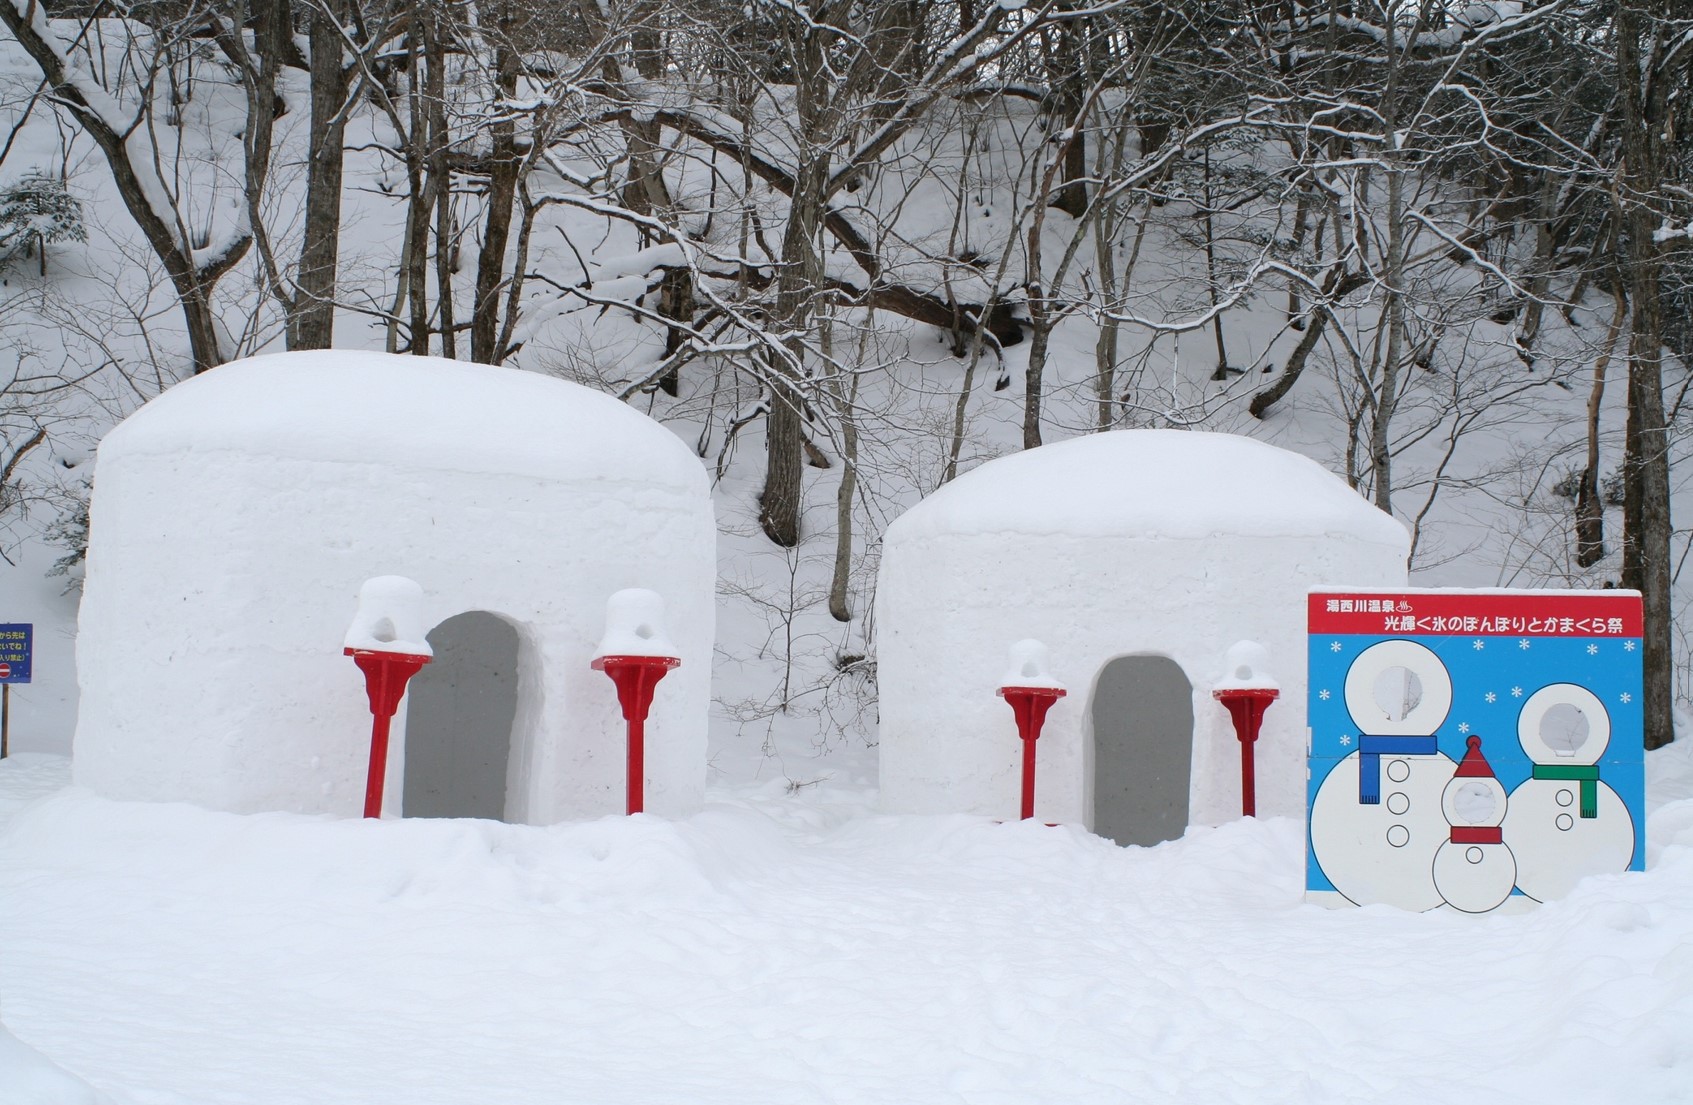 Kamakura Snow Huts at Yunishigawa Onsen